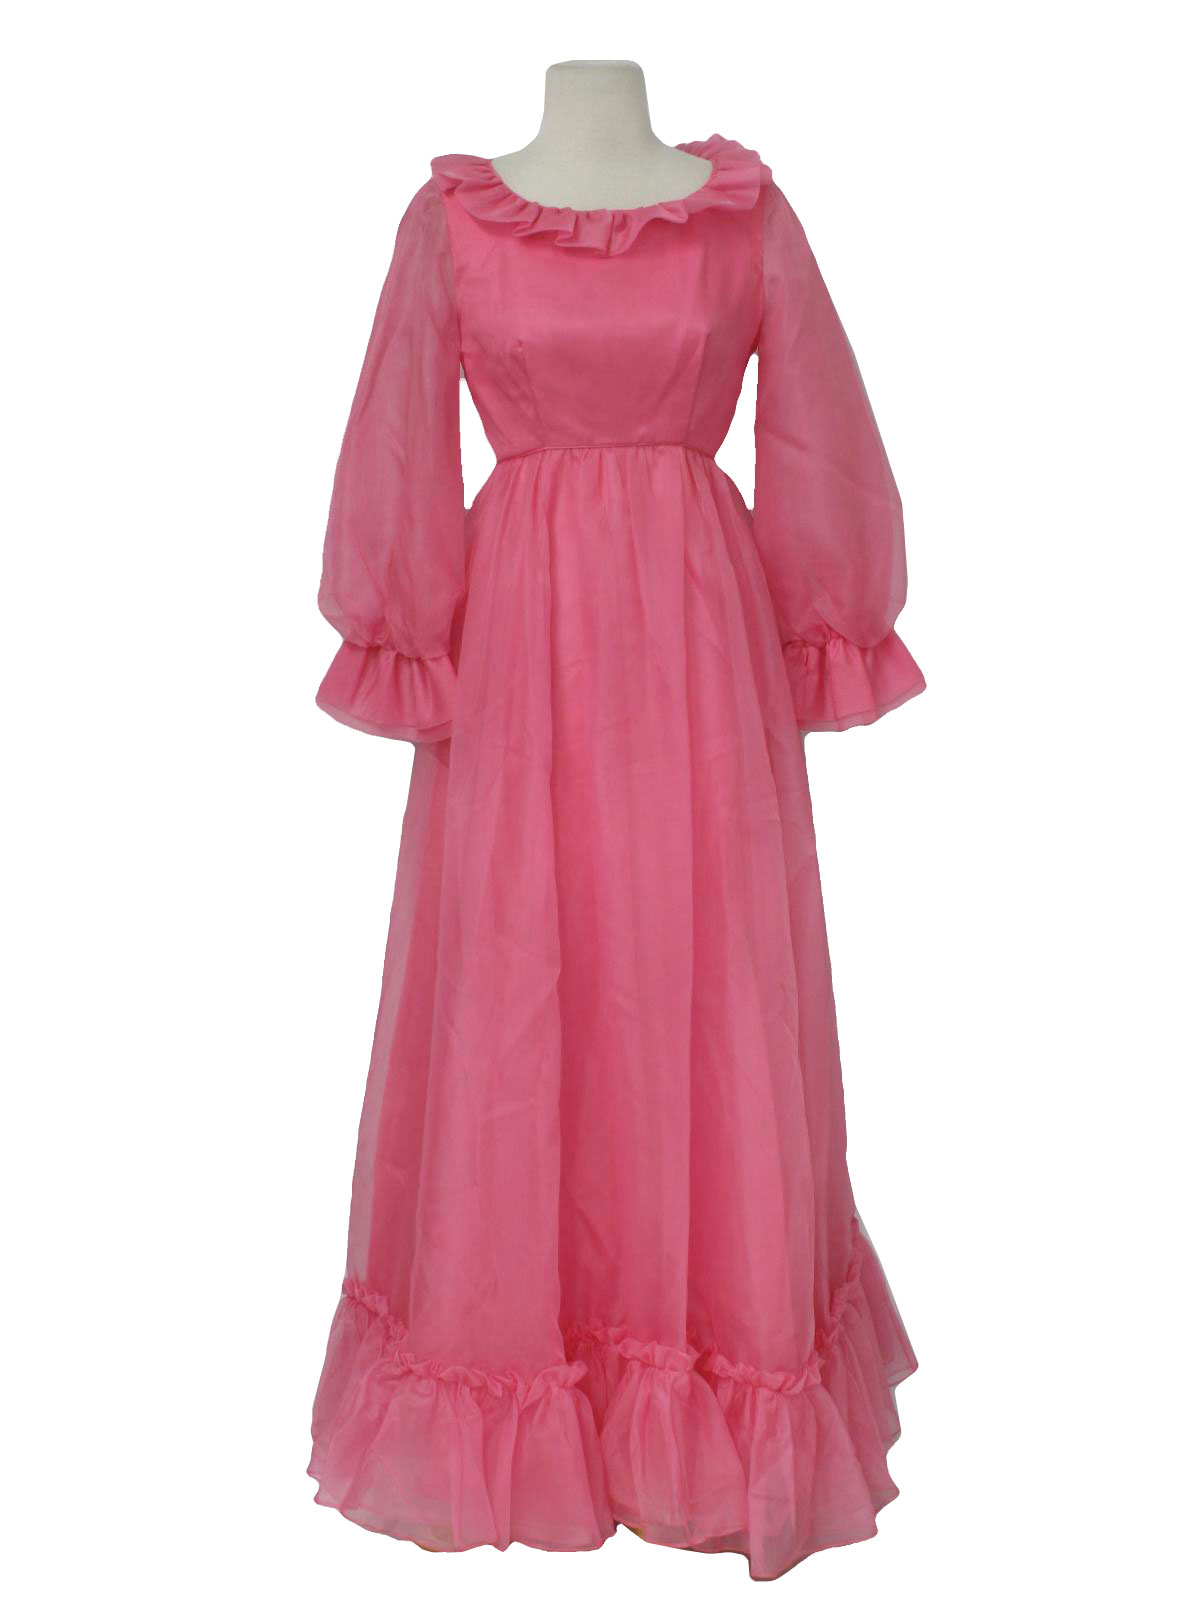 Retro 60s Cocktail Dress (Emma Domb) : 60s -Emma Domb- Womens deep pink ...